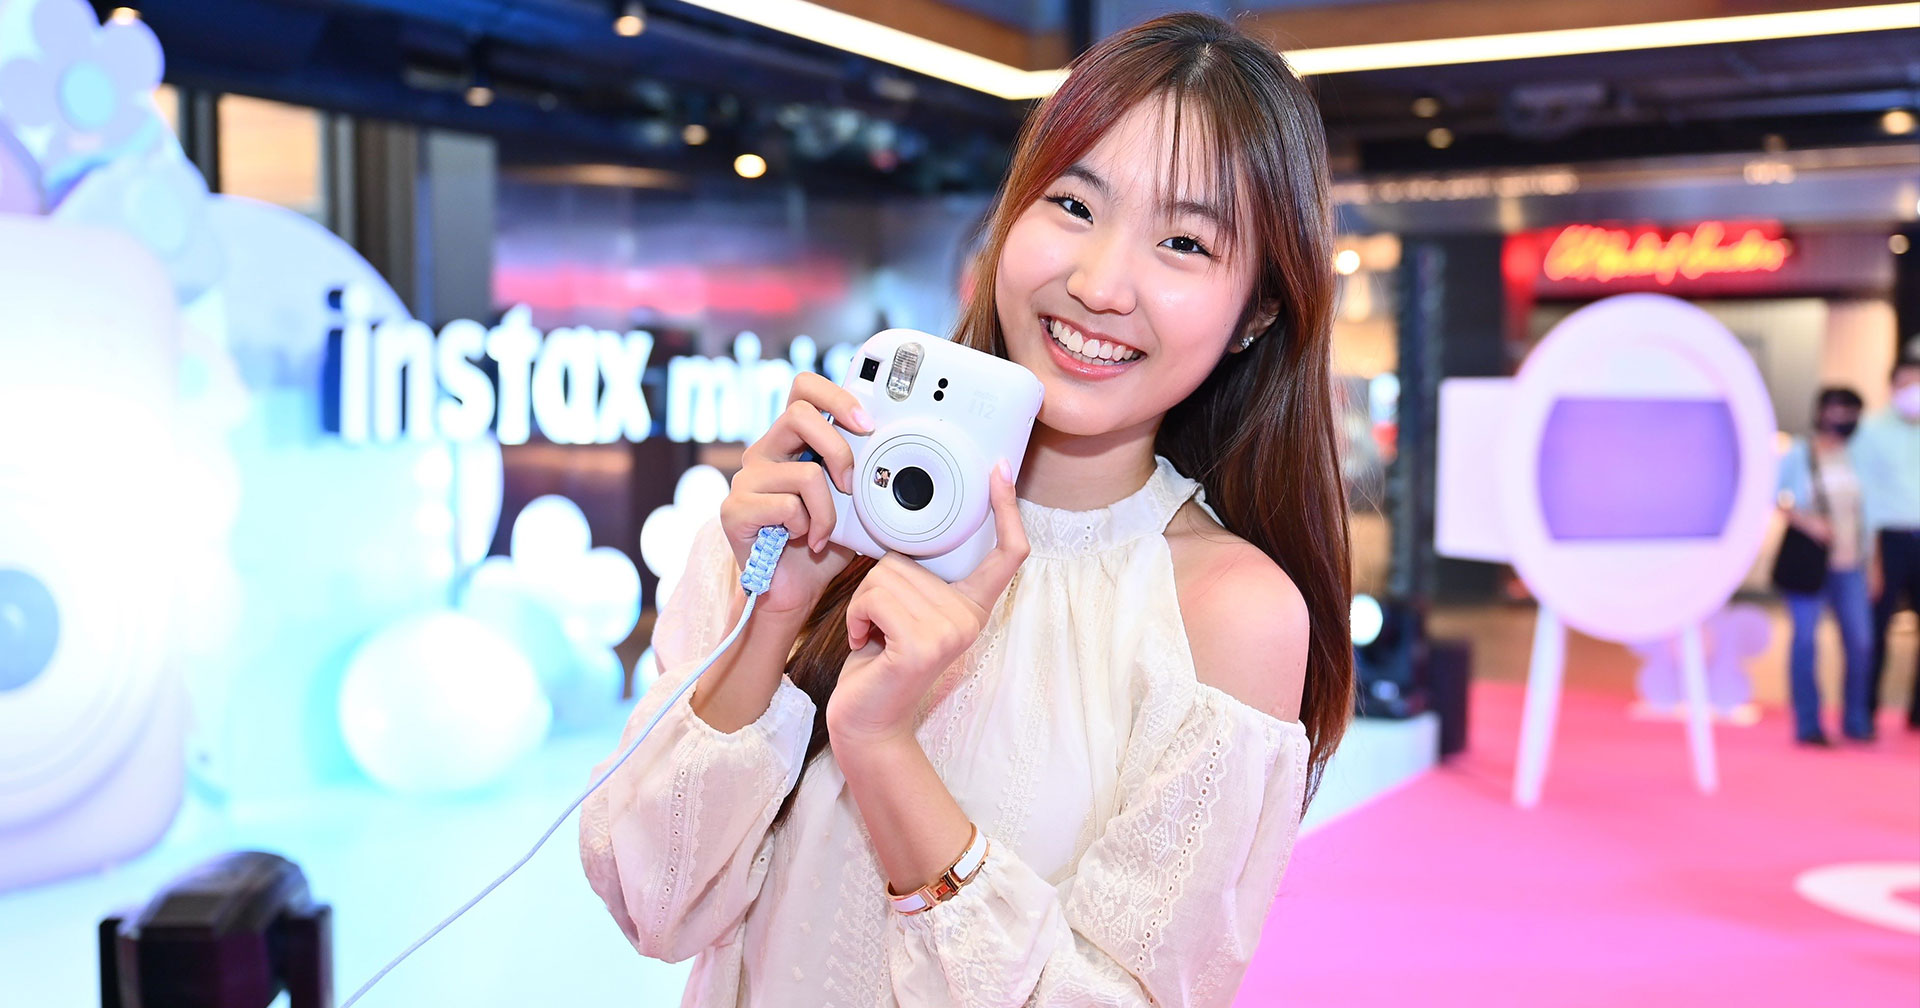 เปิดตัว INSTAX mini 12 กล้องฟิล์มอินสแตนท์รุ่นใหม่! ร่วมแต่งแต้มความสุข ความสดใสให้ชีวิต ในคอนเซปต์ “Fill your world with joy”